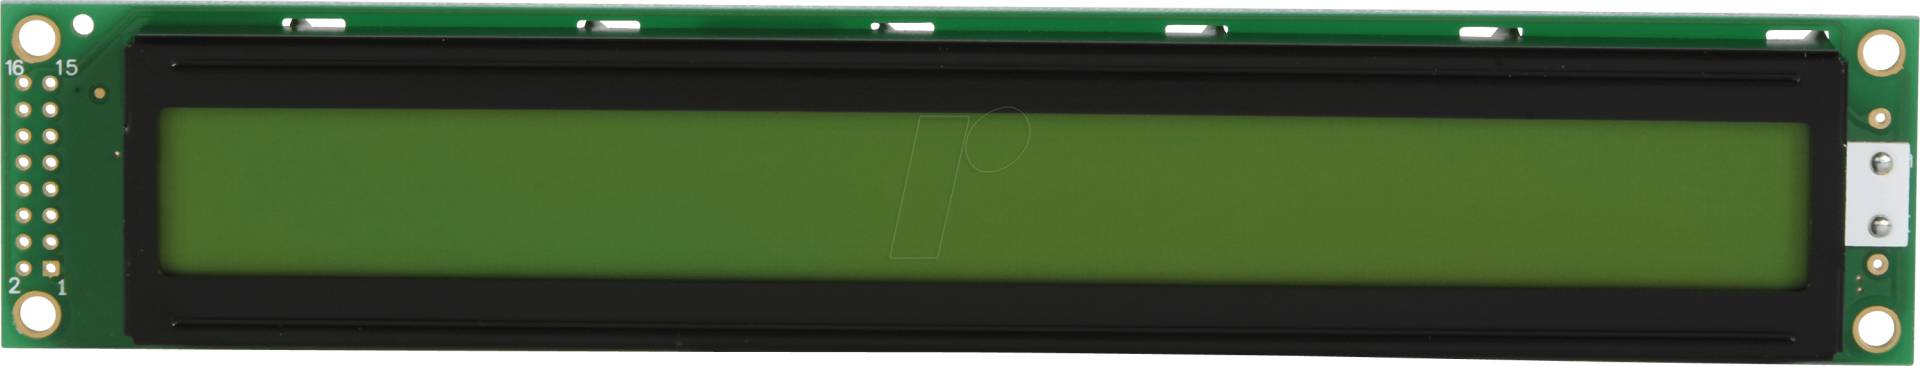 LCD-PM 2X40-6 A - LCD-Modul, 2x40, H:5,7mm, ge/gn, m.Bel. von DISPLAY ELEKTRONIK